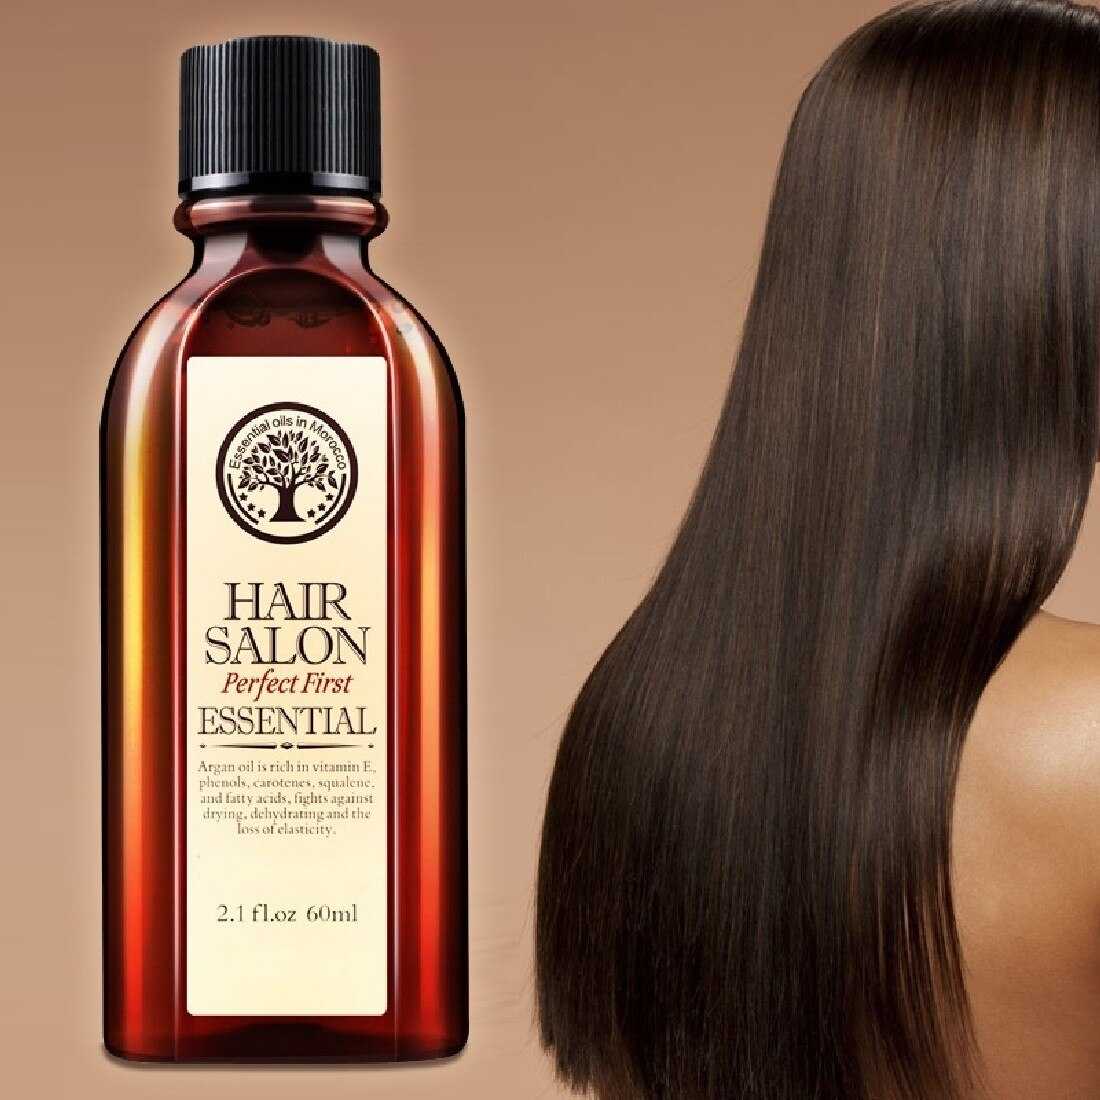 Как использовать льняное масло для волос?